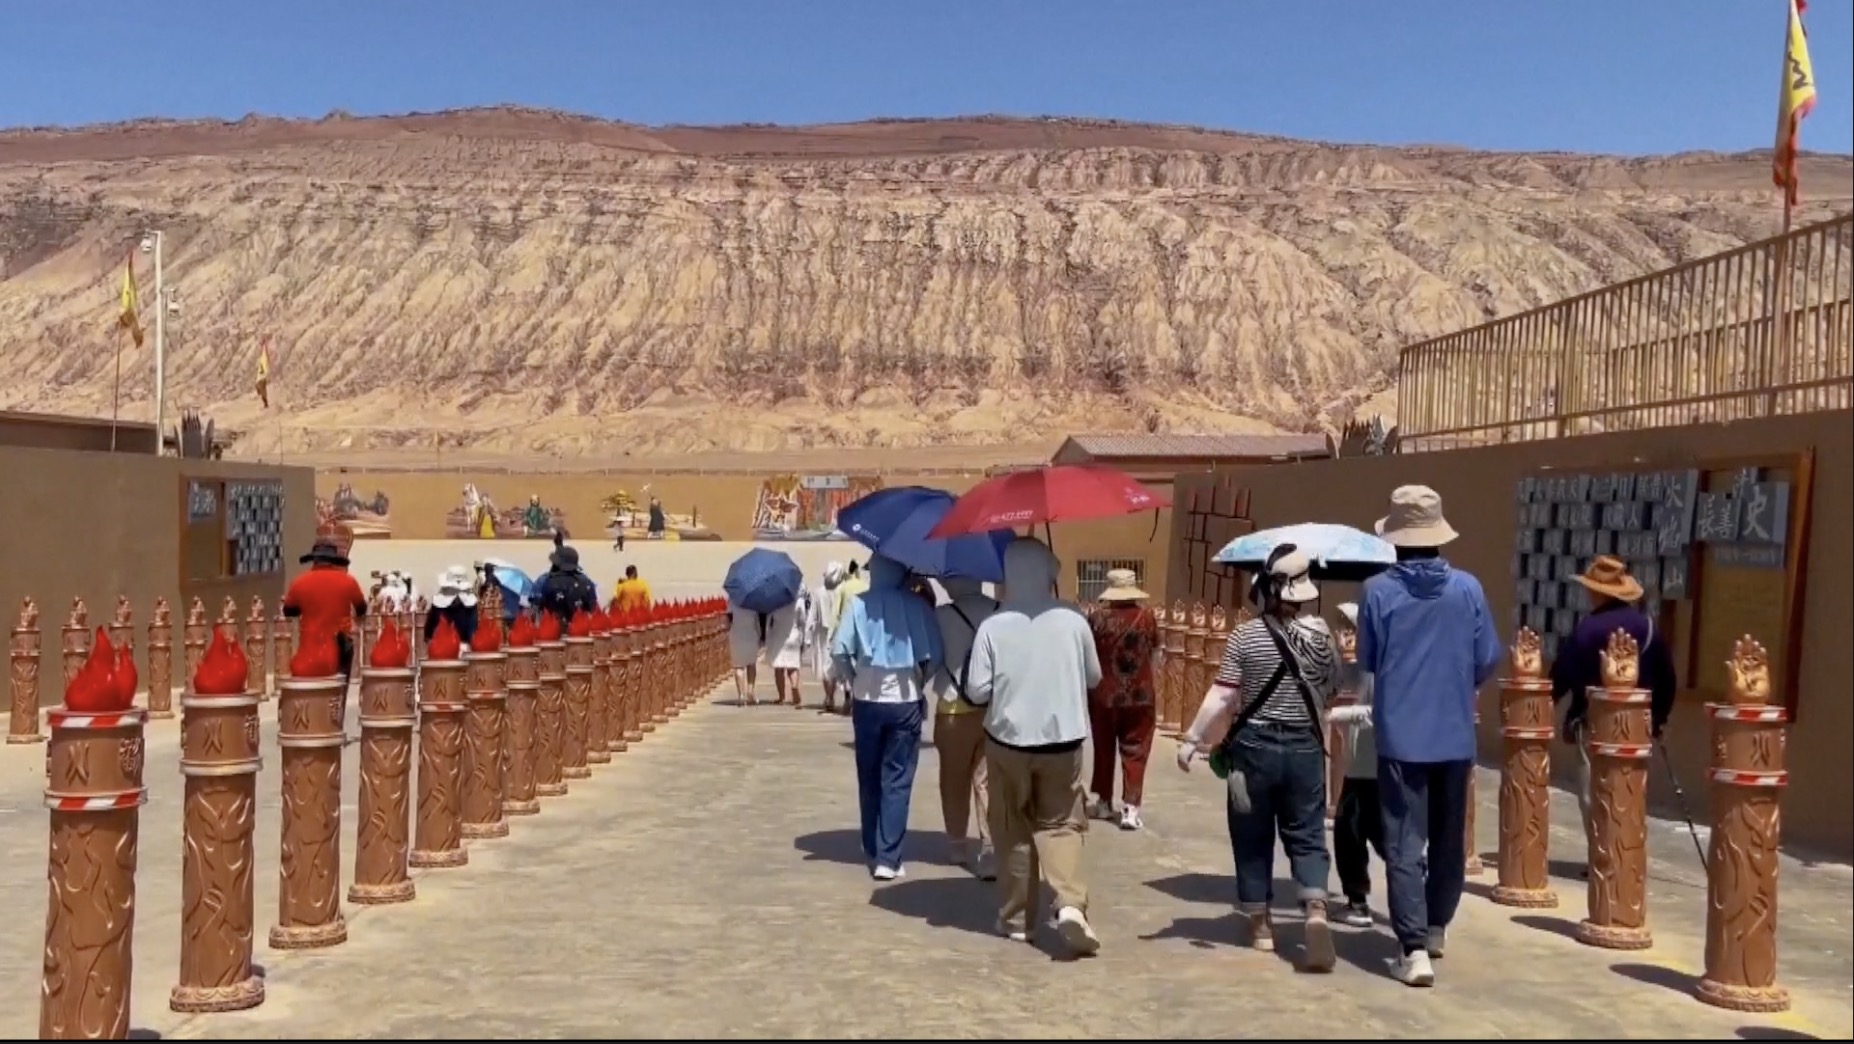 景区内的游客，纷纷打伞避暑。  /中国环球电视网